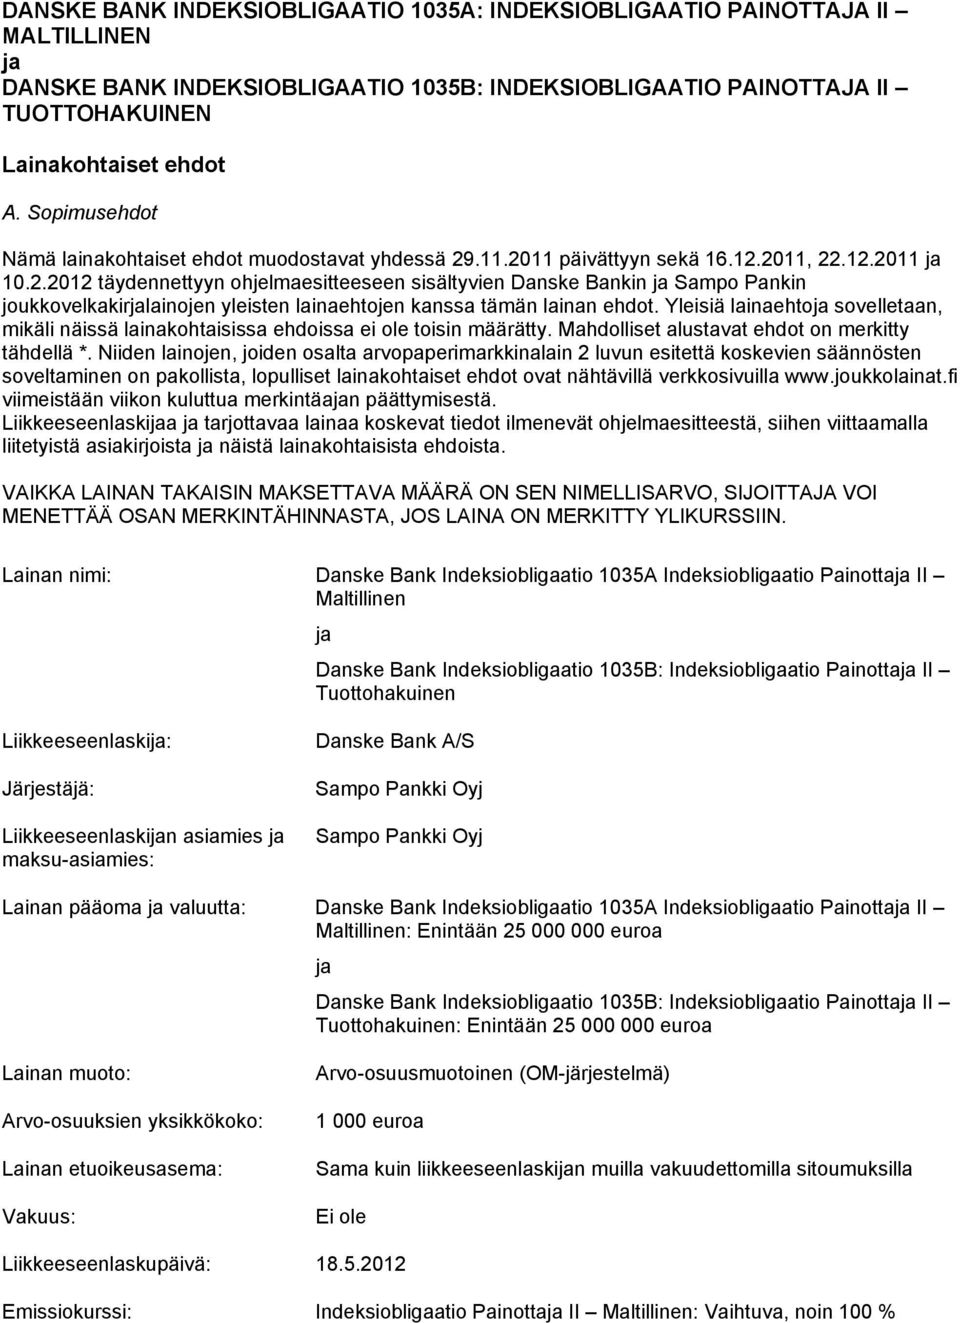 .11.2011 päivättyyn sekä 16.12.2011, 22.12.2011 ja 10.2.2012 täydennettyyn ohjelmaesitteeseen sisältyvien Danske Bankin ja Sampo Pankin joukkovelkakirjalainojen yleisten lainaehtojen kanssa tämän lainan ehdot.